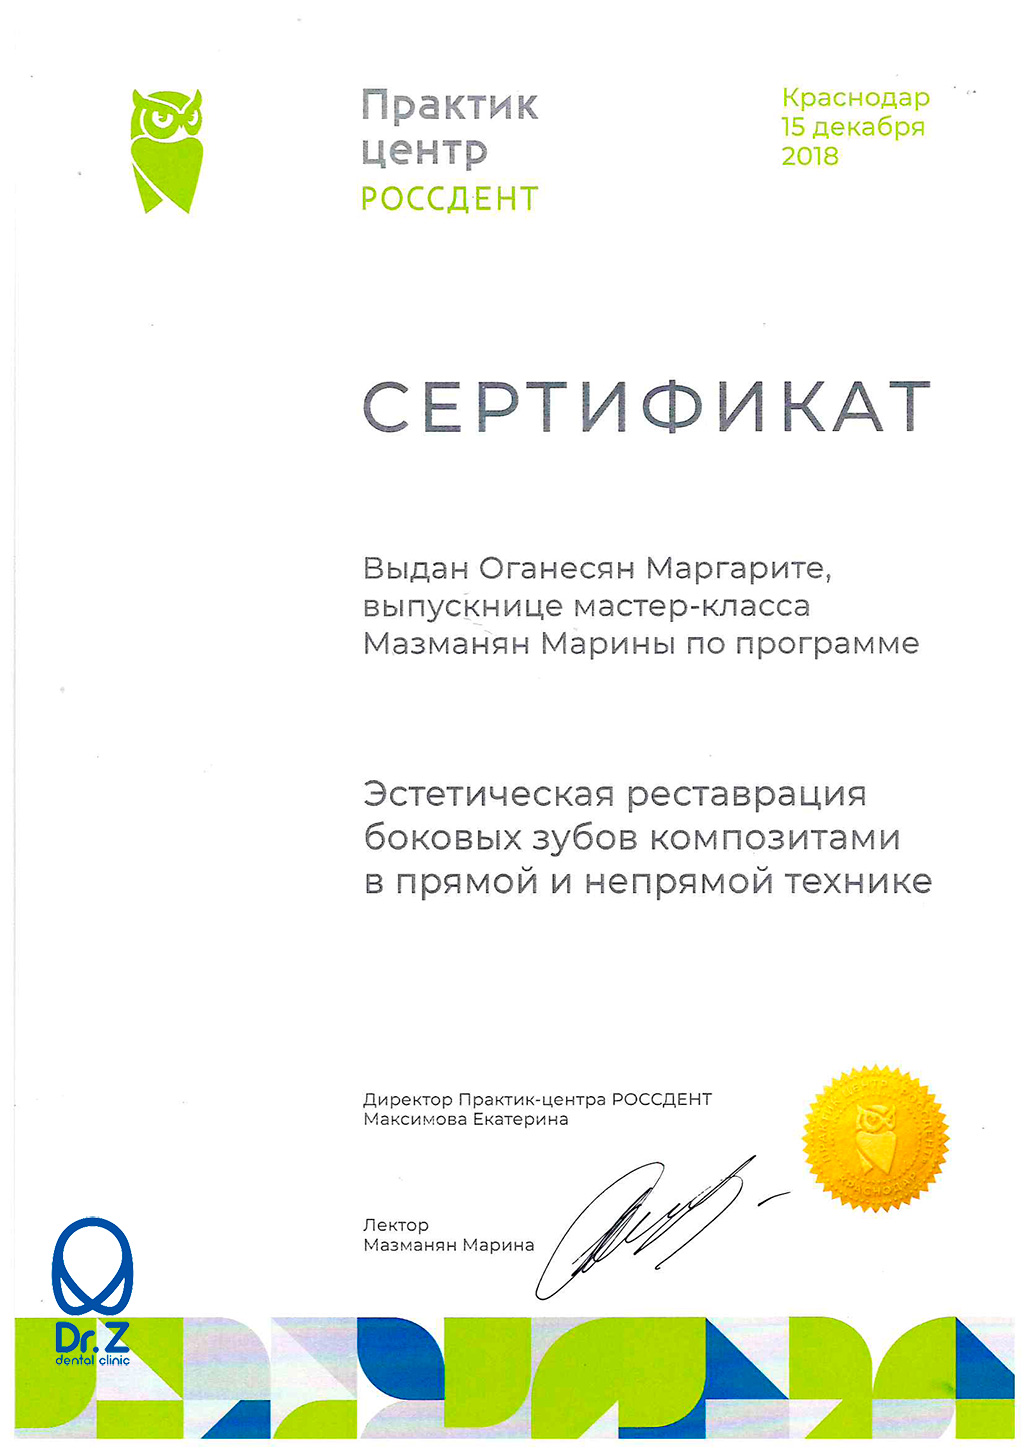 Сертификат Оганесян Маргарите Гагиковне о том, что она прошла мастер-класс Мазманян Марины по программе 